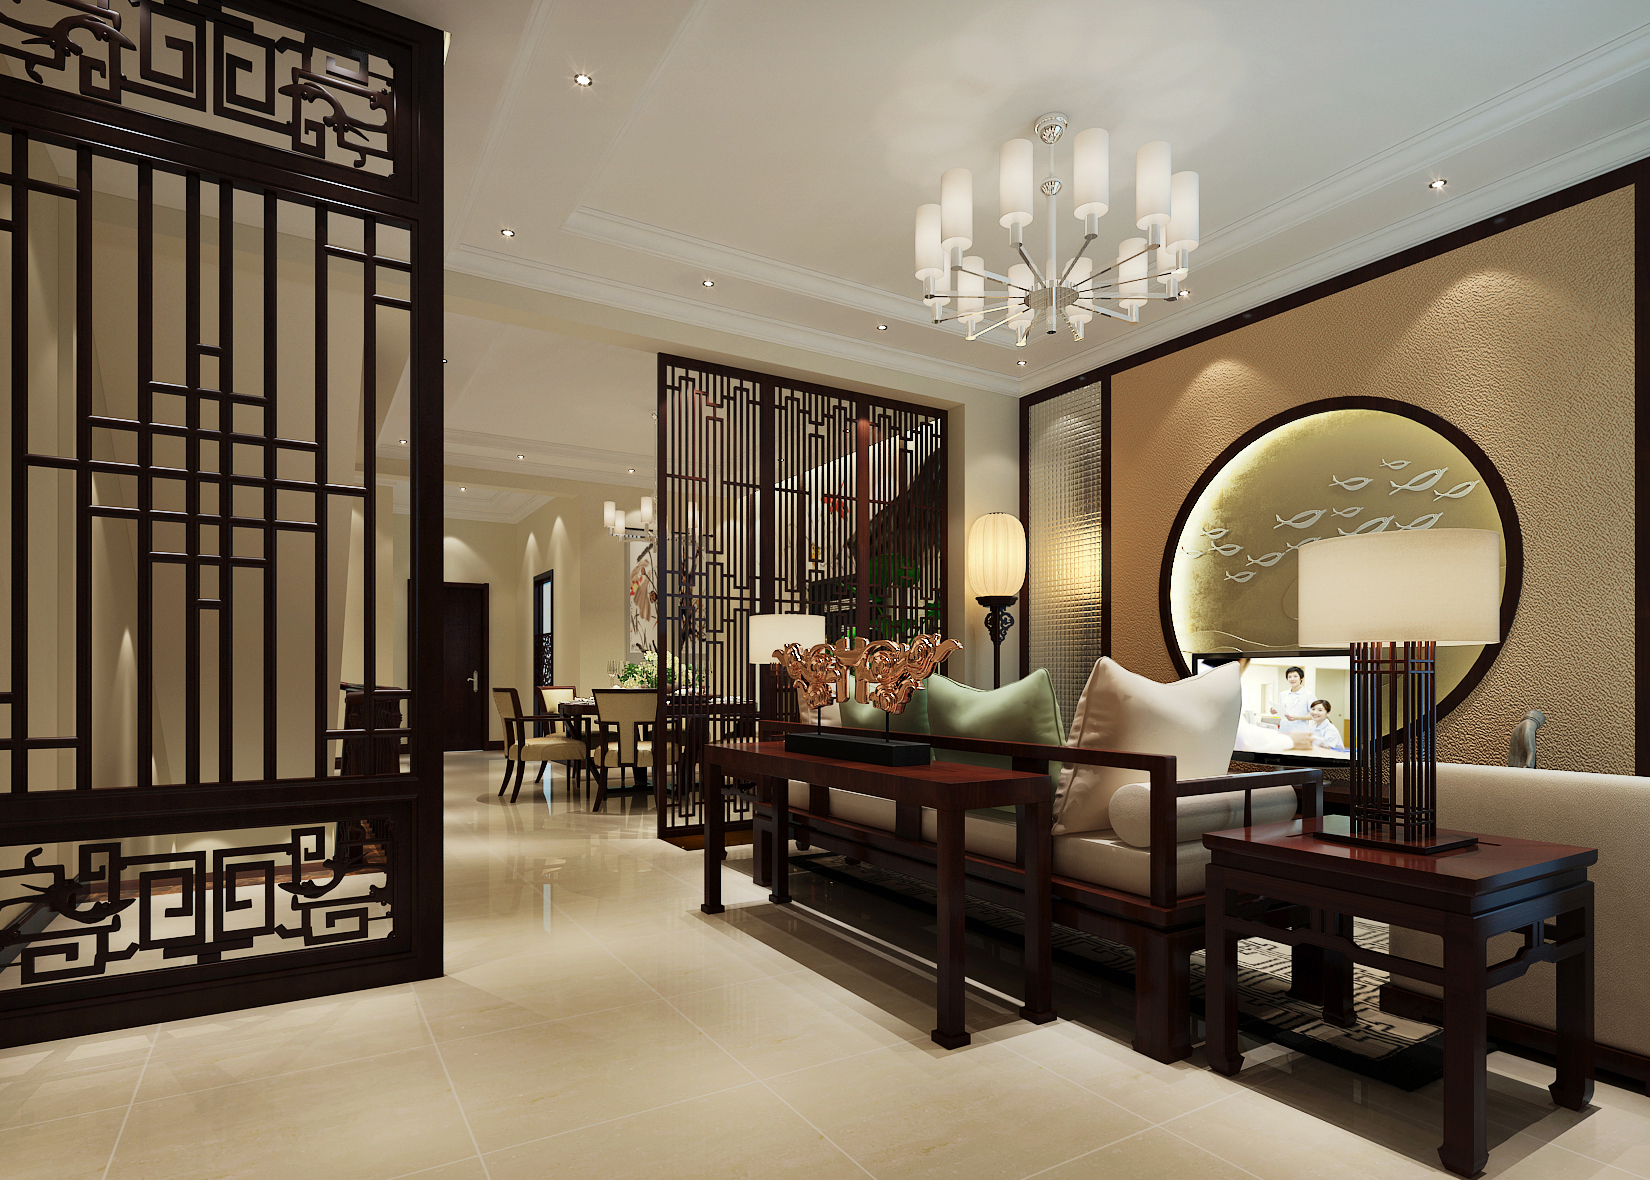 刘杨成 刘杨 客厅图片来自交换空间刘杨成室内设计师在26万打造法式典雅浪漫别墅的分享